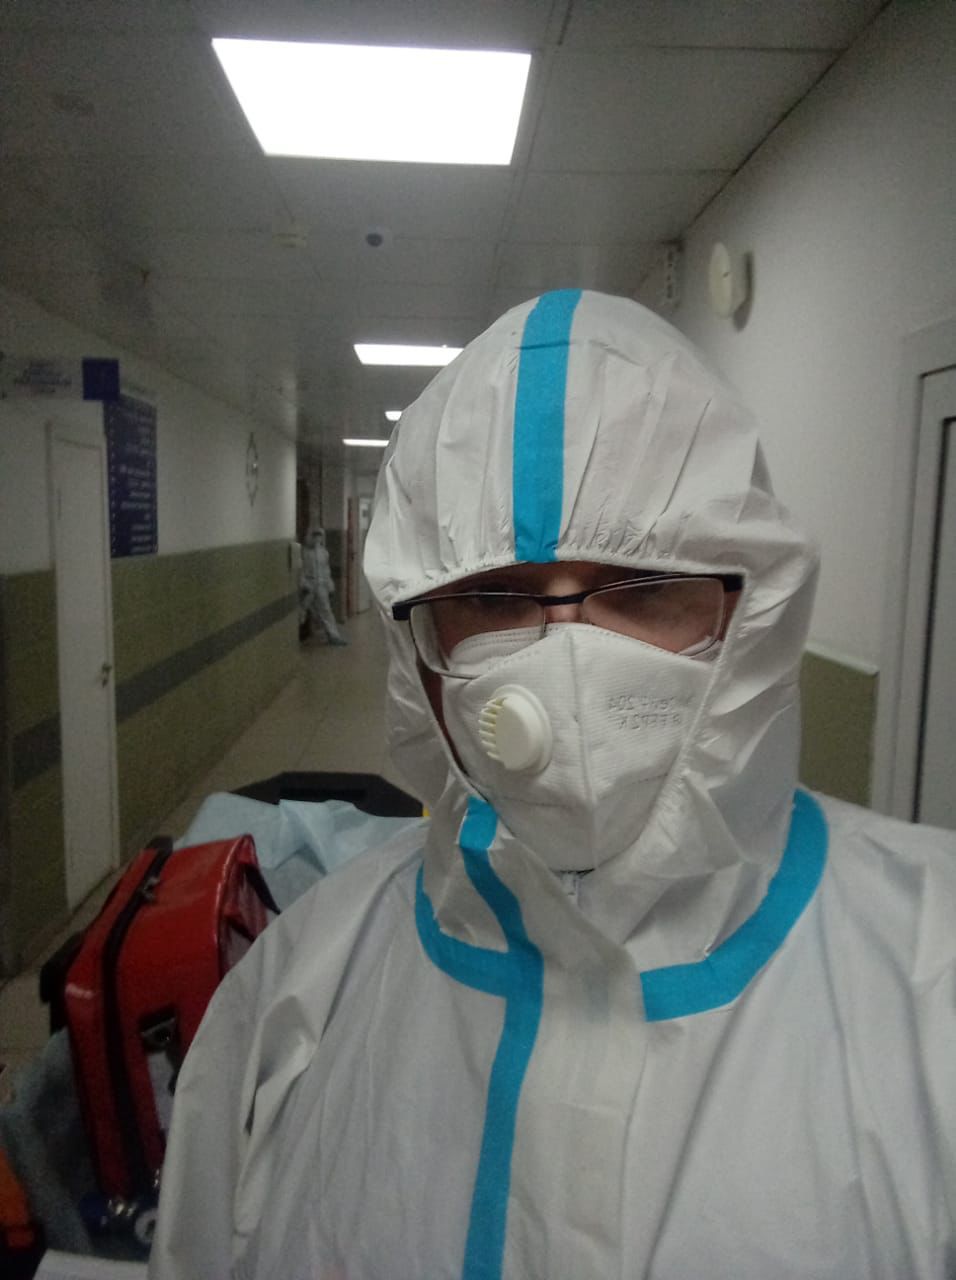 Транспортировка пациента из ГКБ15 в госпиталь Вишневского на реабилитацию после Сovid-19. 5